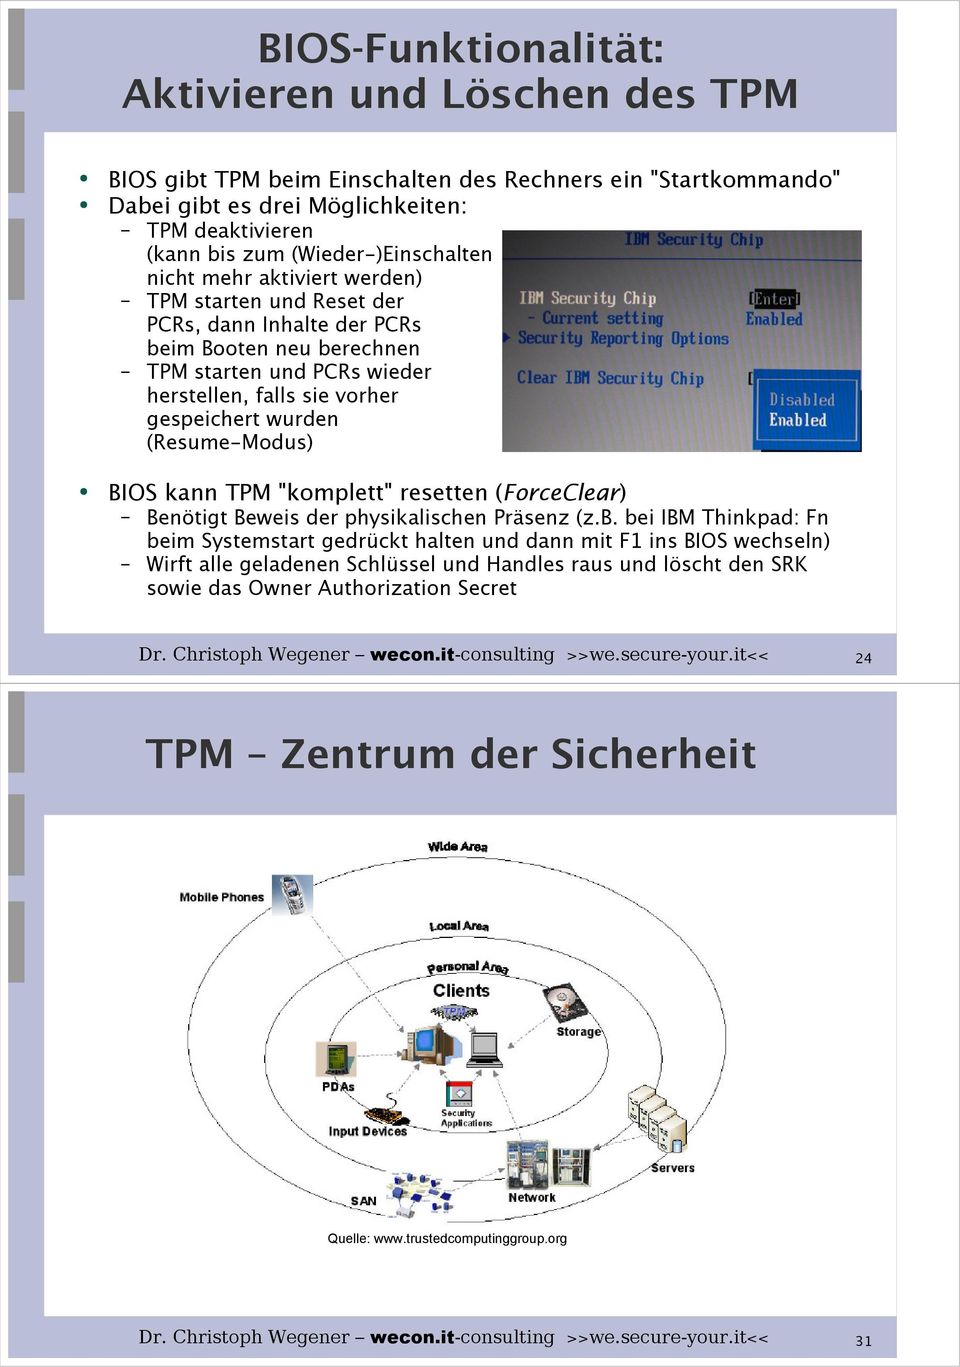 gespeichert wurden (Resume-Modus) BIOS kann TPM "komplett" resetten (ForceClear) Benötigt Beweis der physikalischen Präsenz (z.b.